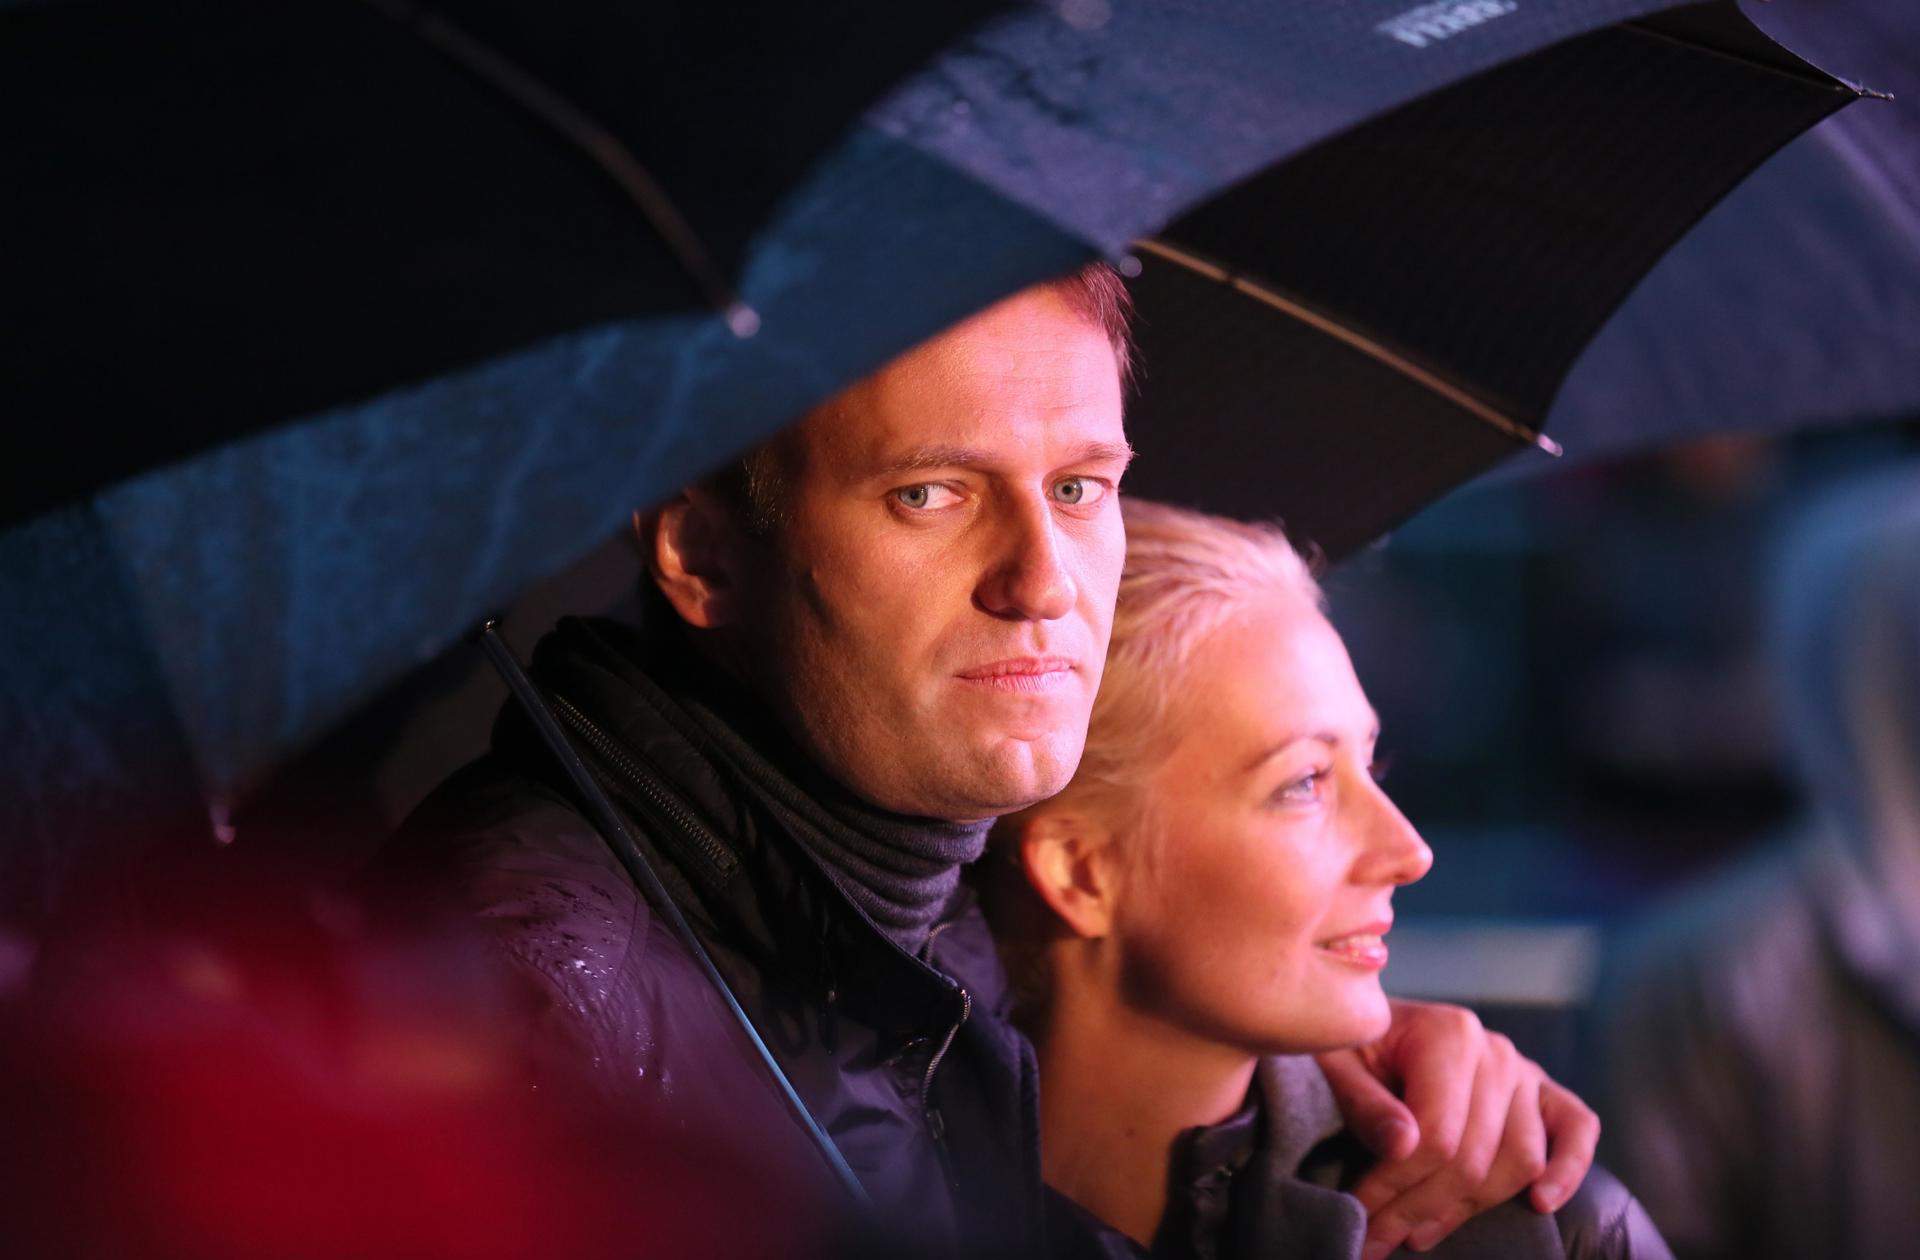 El emotivo vídeo de despedida de la mujer de Navalni: "No sé cómo vivir sin ti, pero lo intentaré"